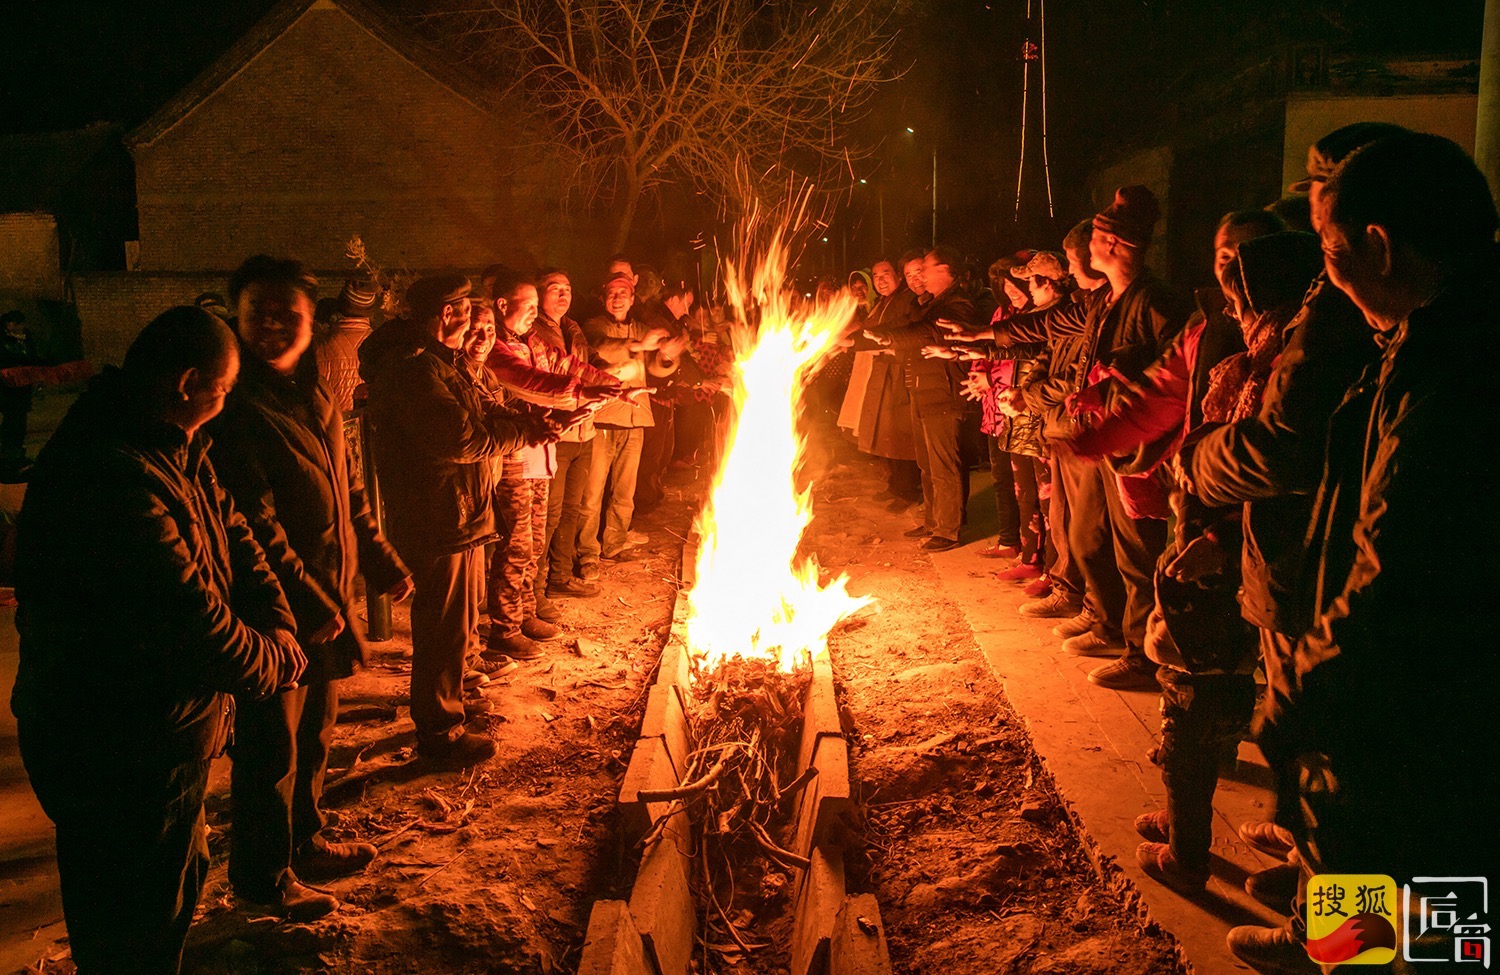 华北冬日里的村民,户外取暖打麻将,还办篝火晚会